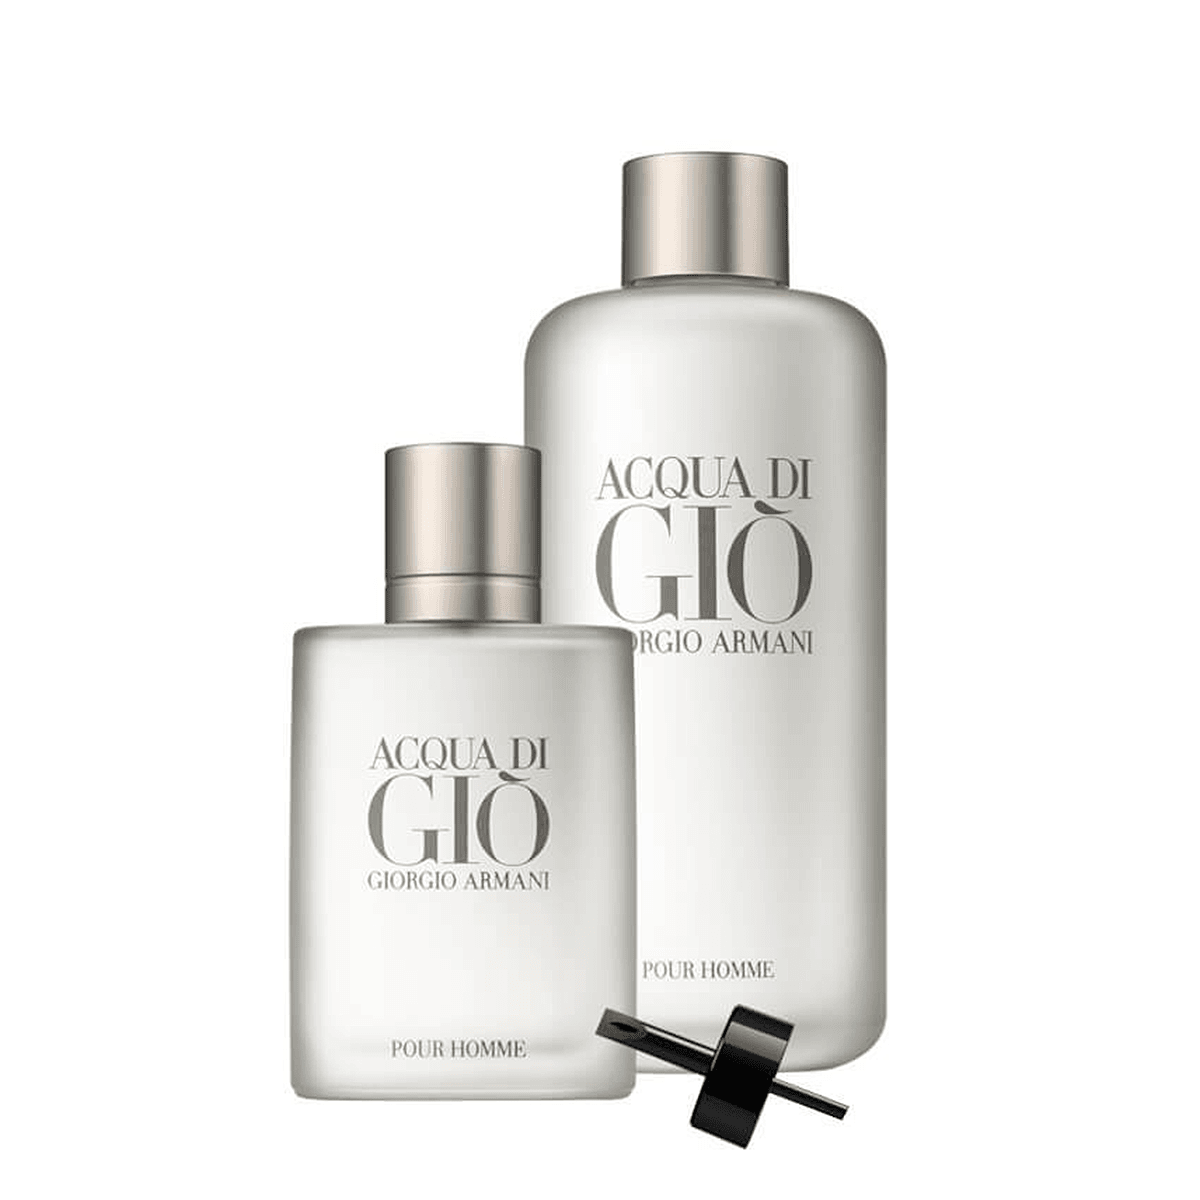 Giorgio Armani Acqua Di Gio EDT Refillable Travel Set - My Perfume Shop Australia